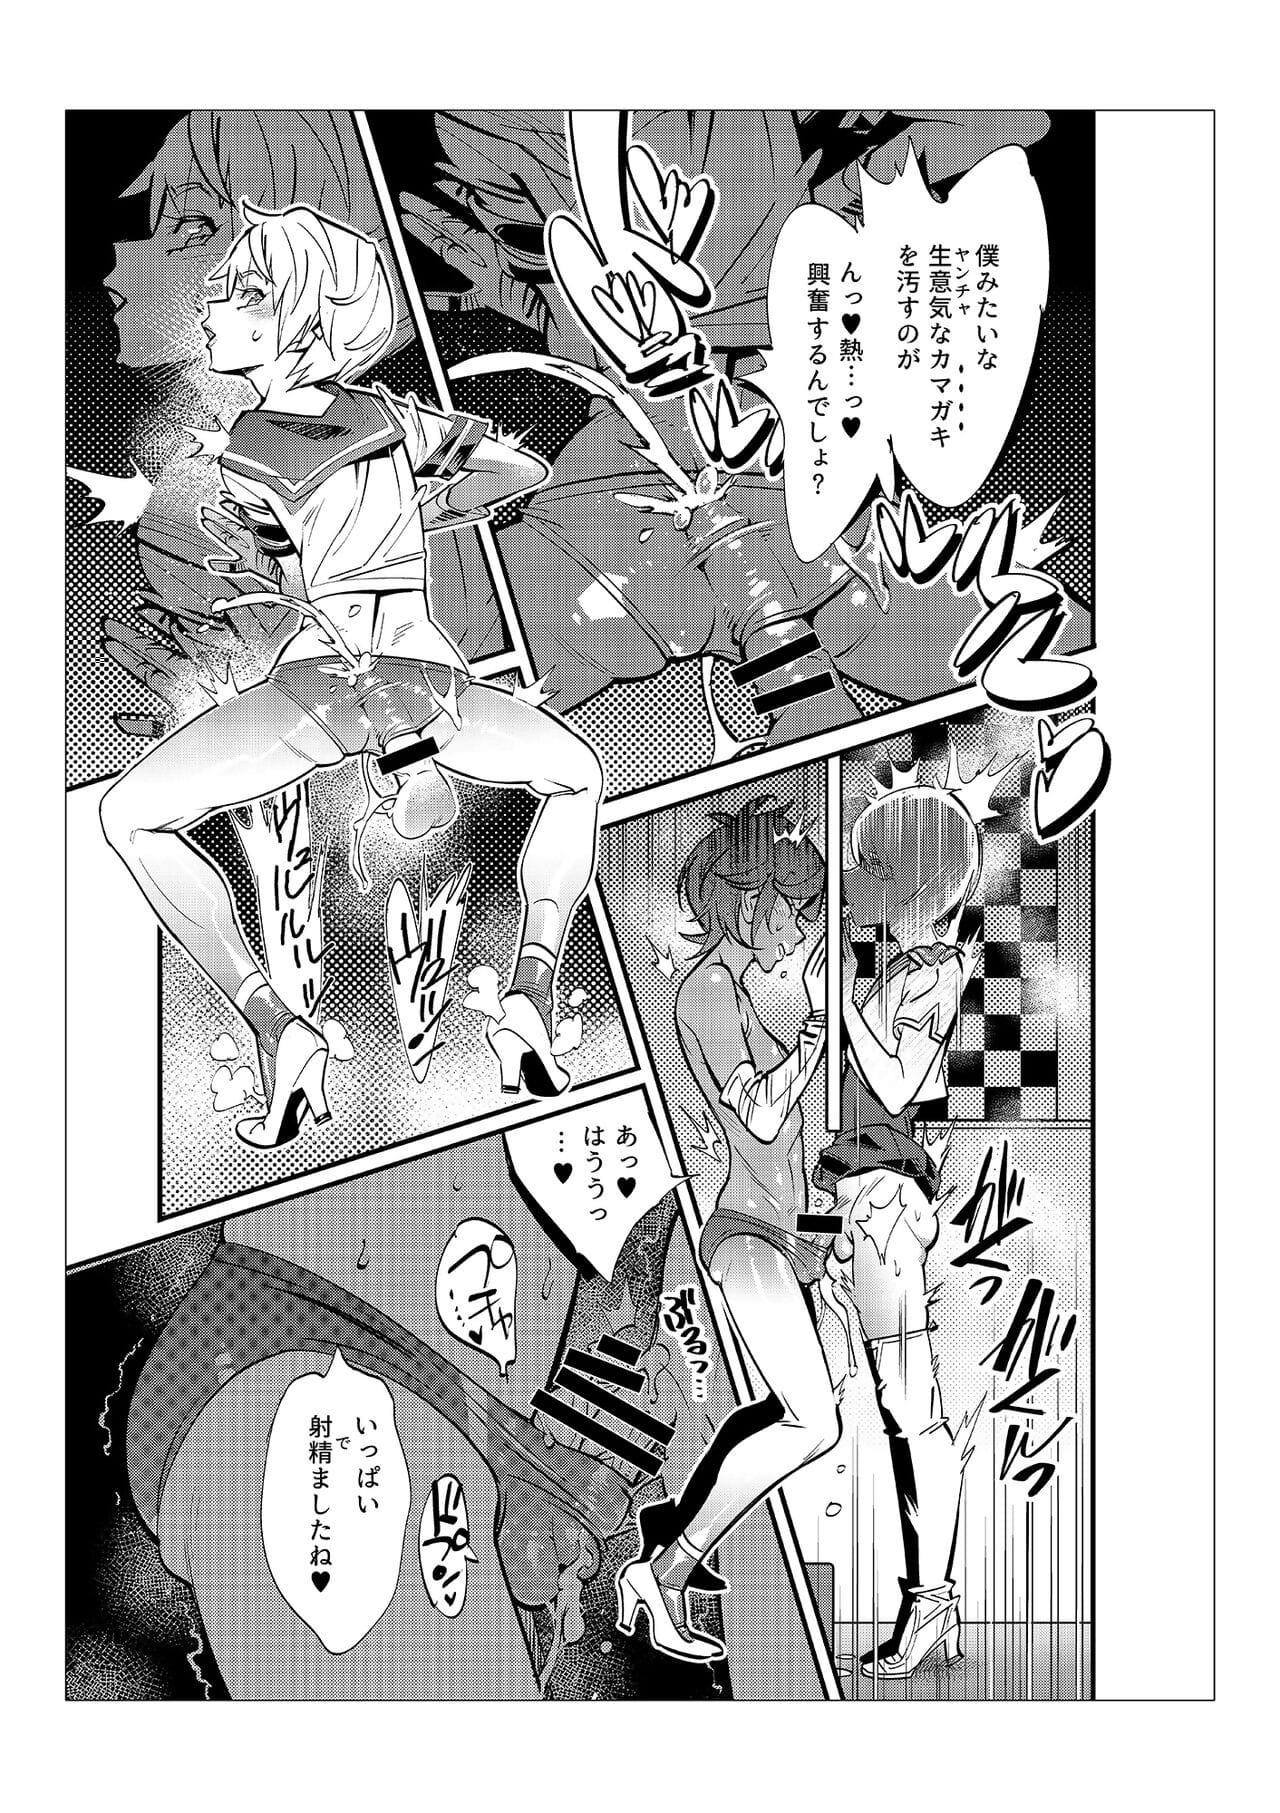 Danshi dake ga kayoeru joshi-k? onoyuri gakuen - part 3 page 1